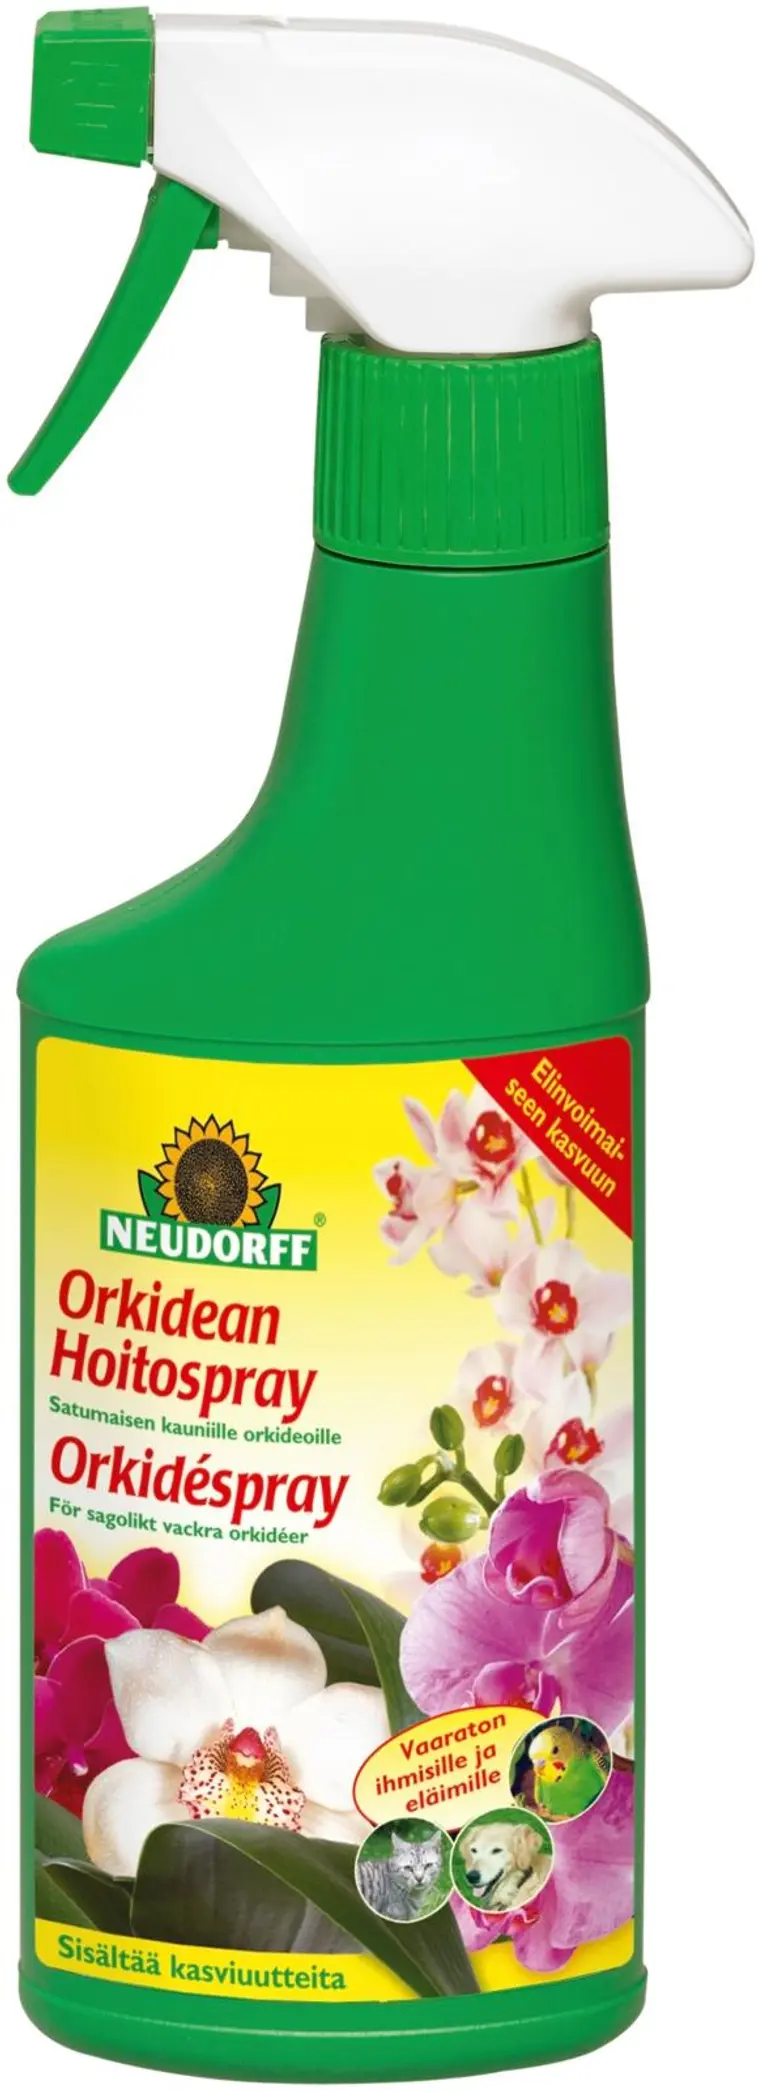 Neudorff 250ml orkidean hoitospray